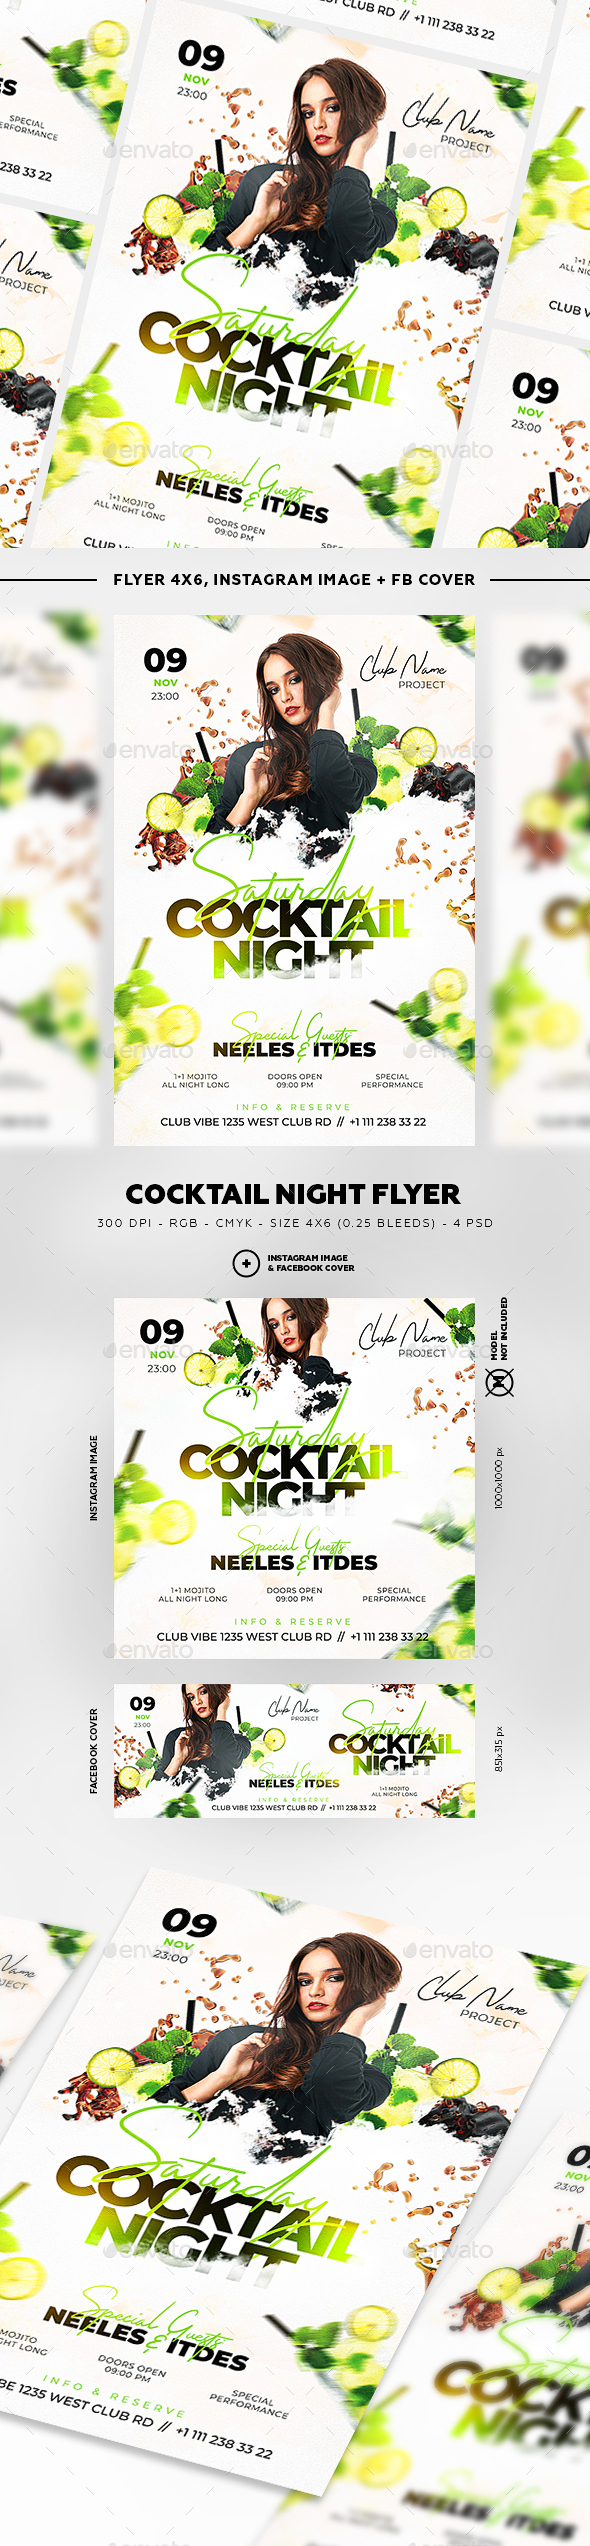 时尚鸡尾酒晚宴宣传海报模板 Cocktail Night Flyer [psd]插图